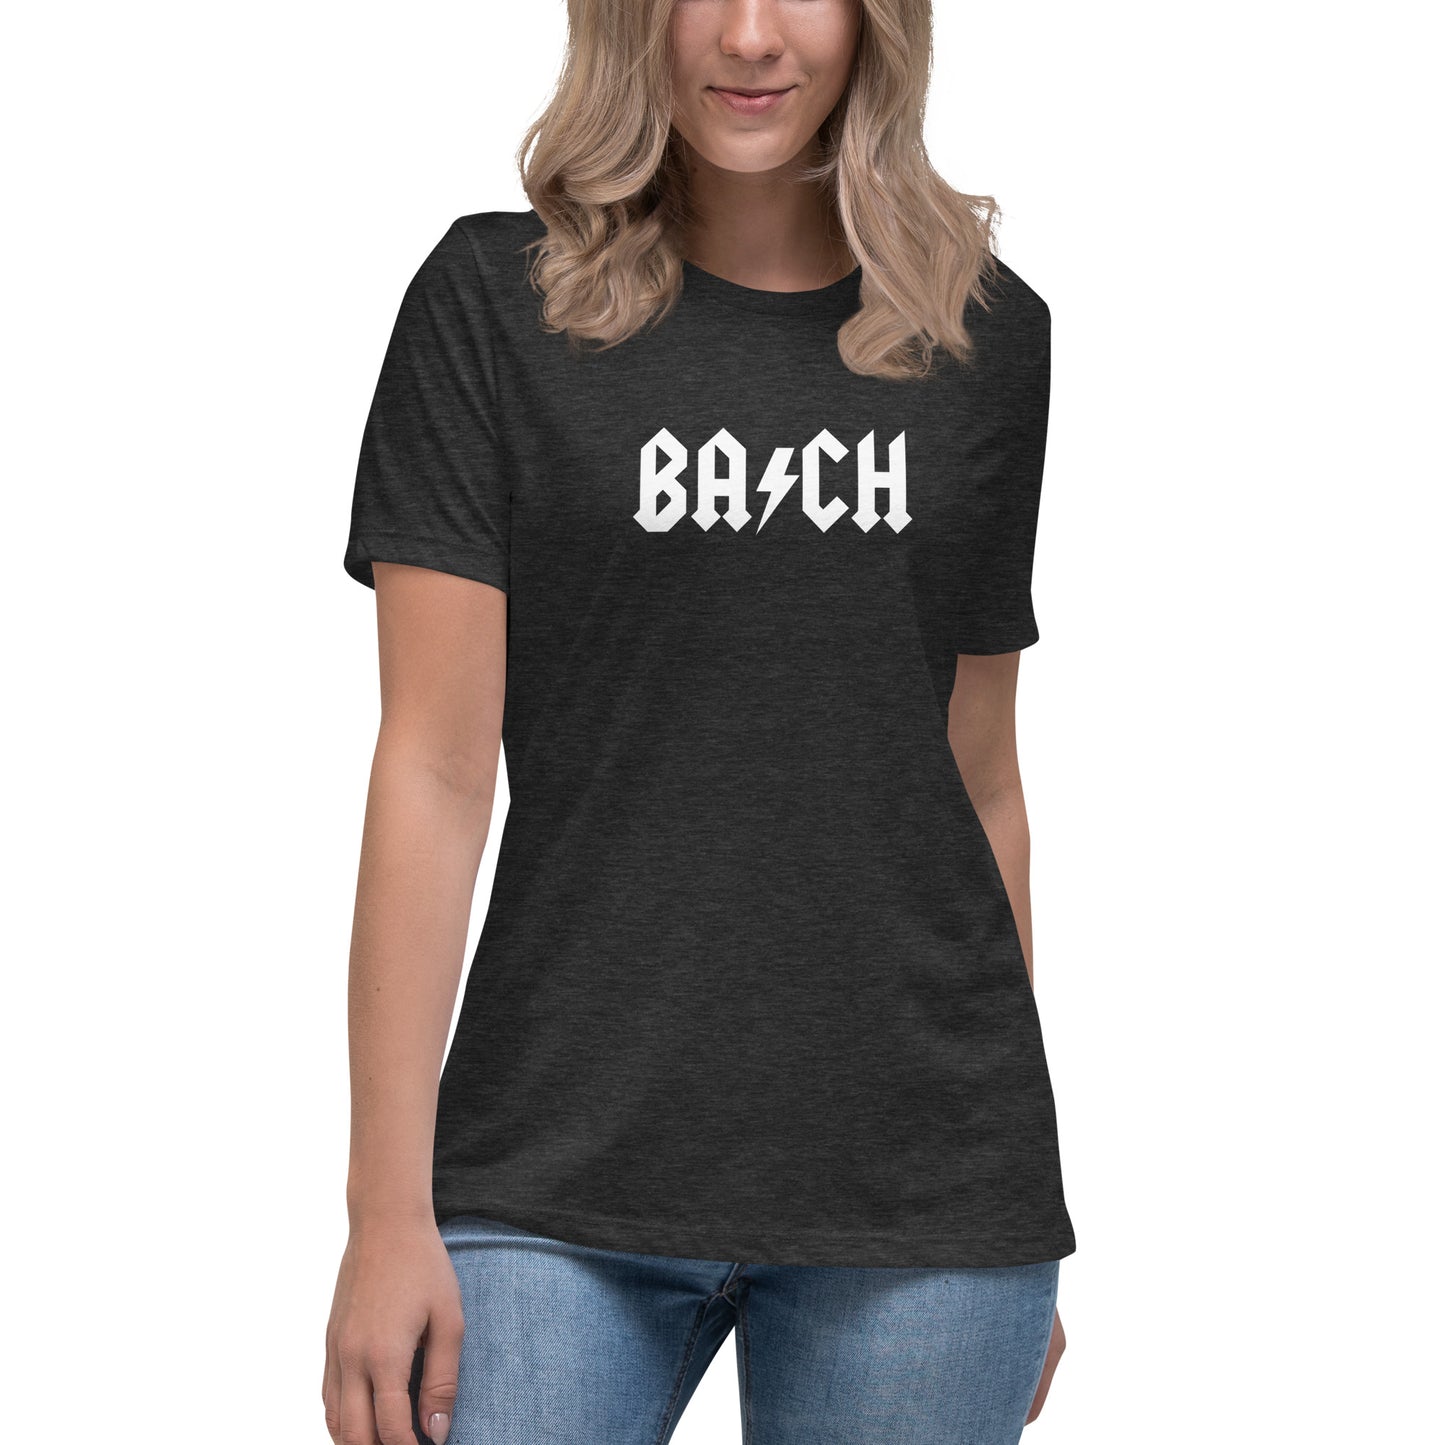 Bach - Women's Relaxed T-Shirt